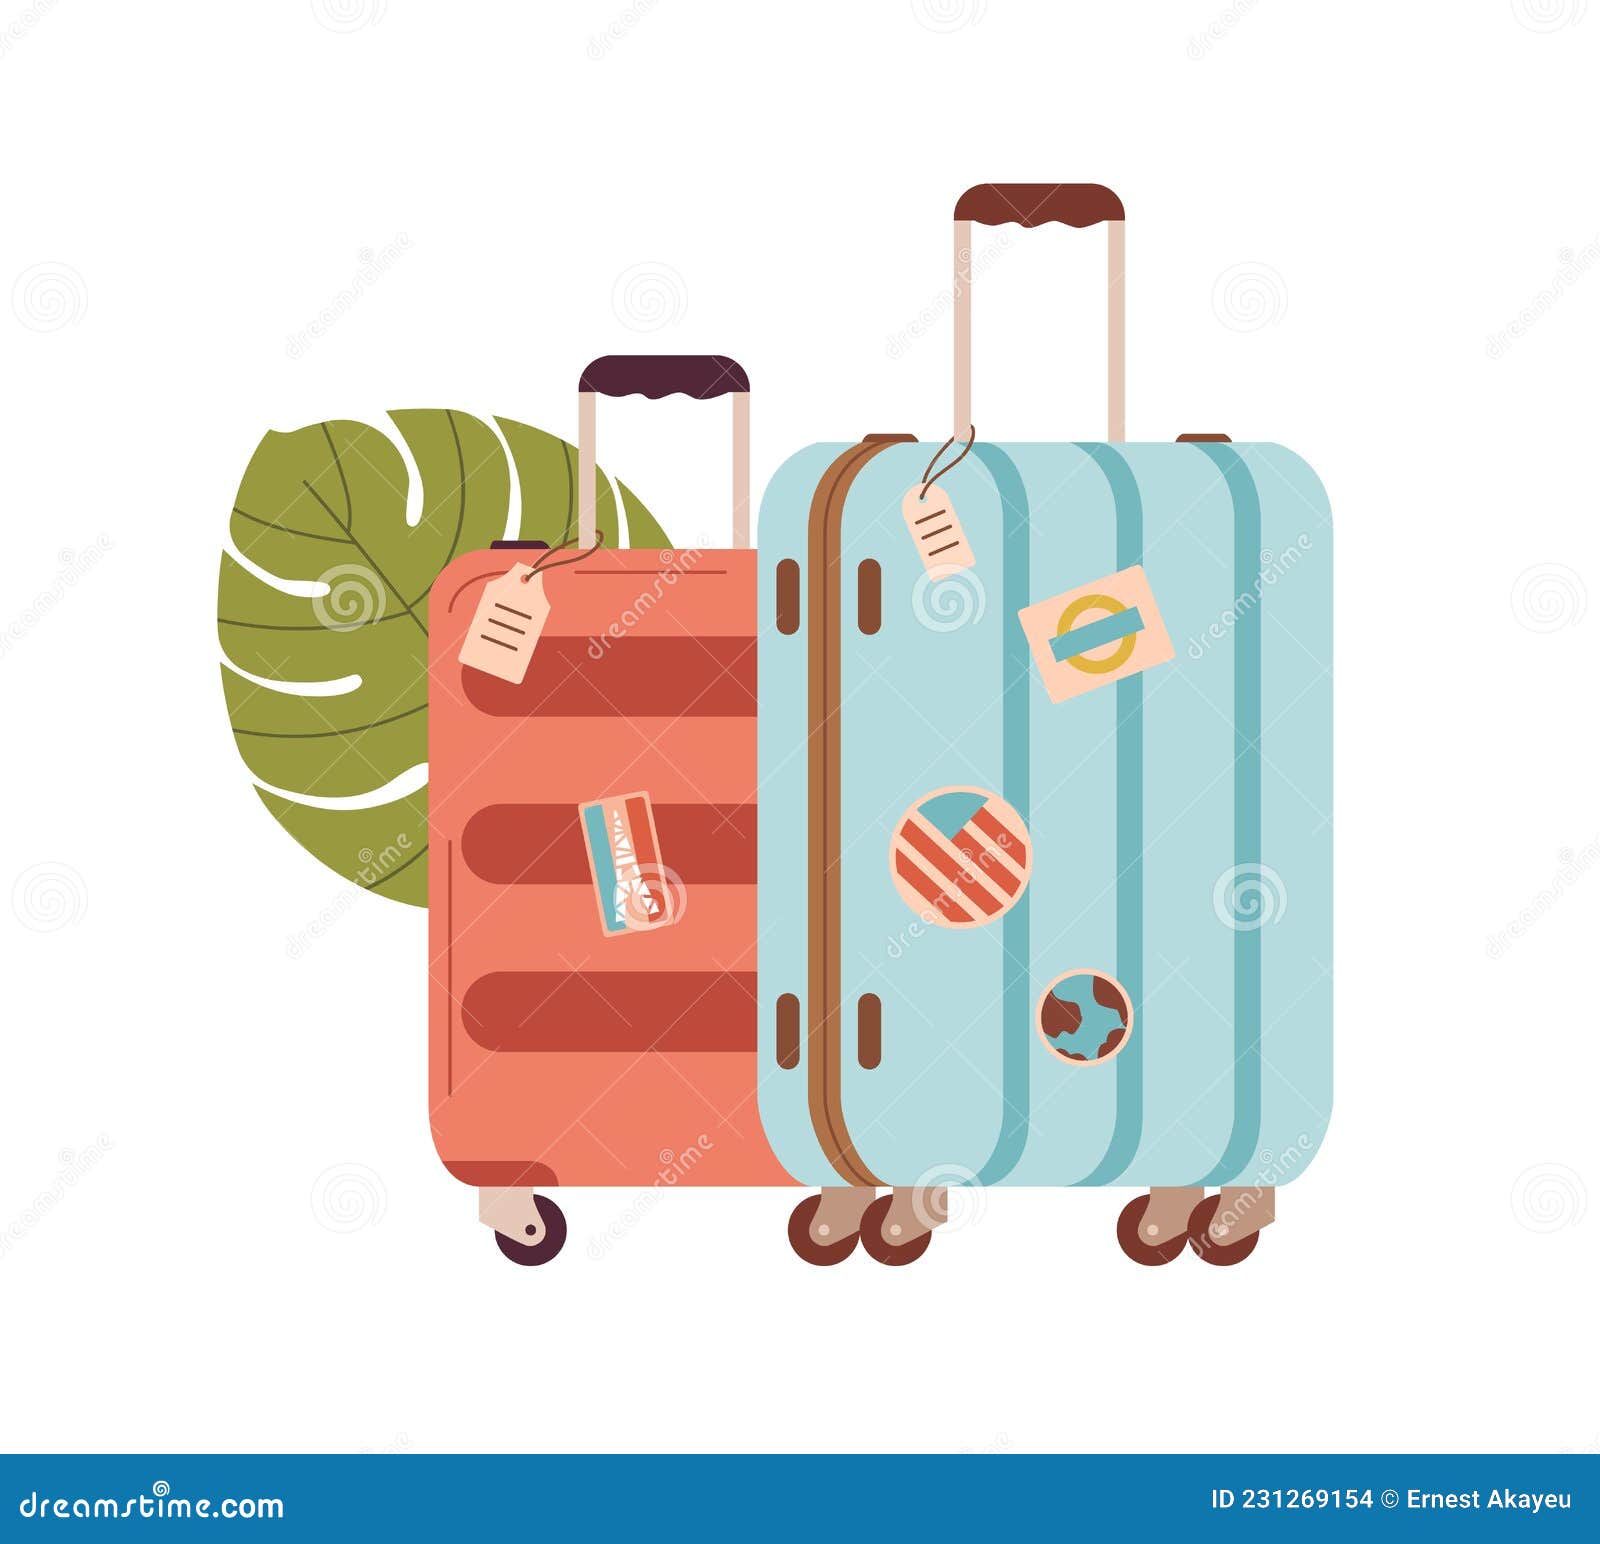 Bạn đang chuẩn bị cho chuyến đi của tiếng nói của mình? Hãy cùng xem hình để tìm hiểu thêm về những mẹo vặt hữu ích cho việc đóng gói hành lý.